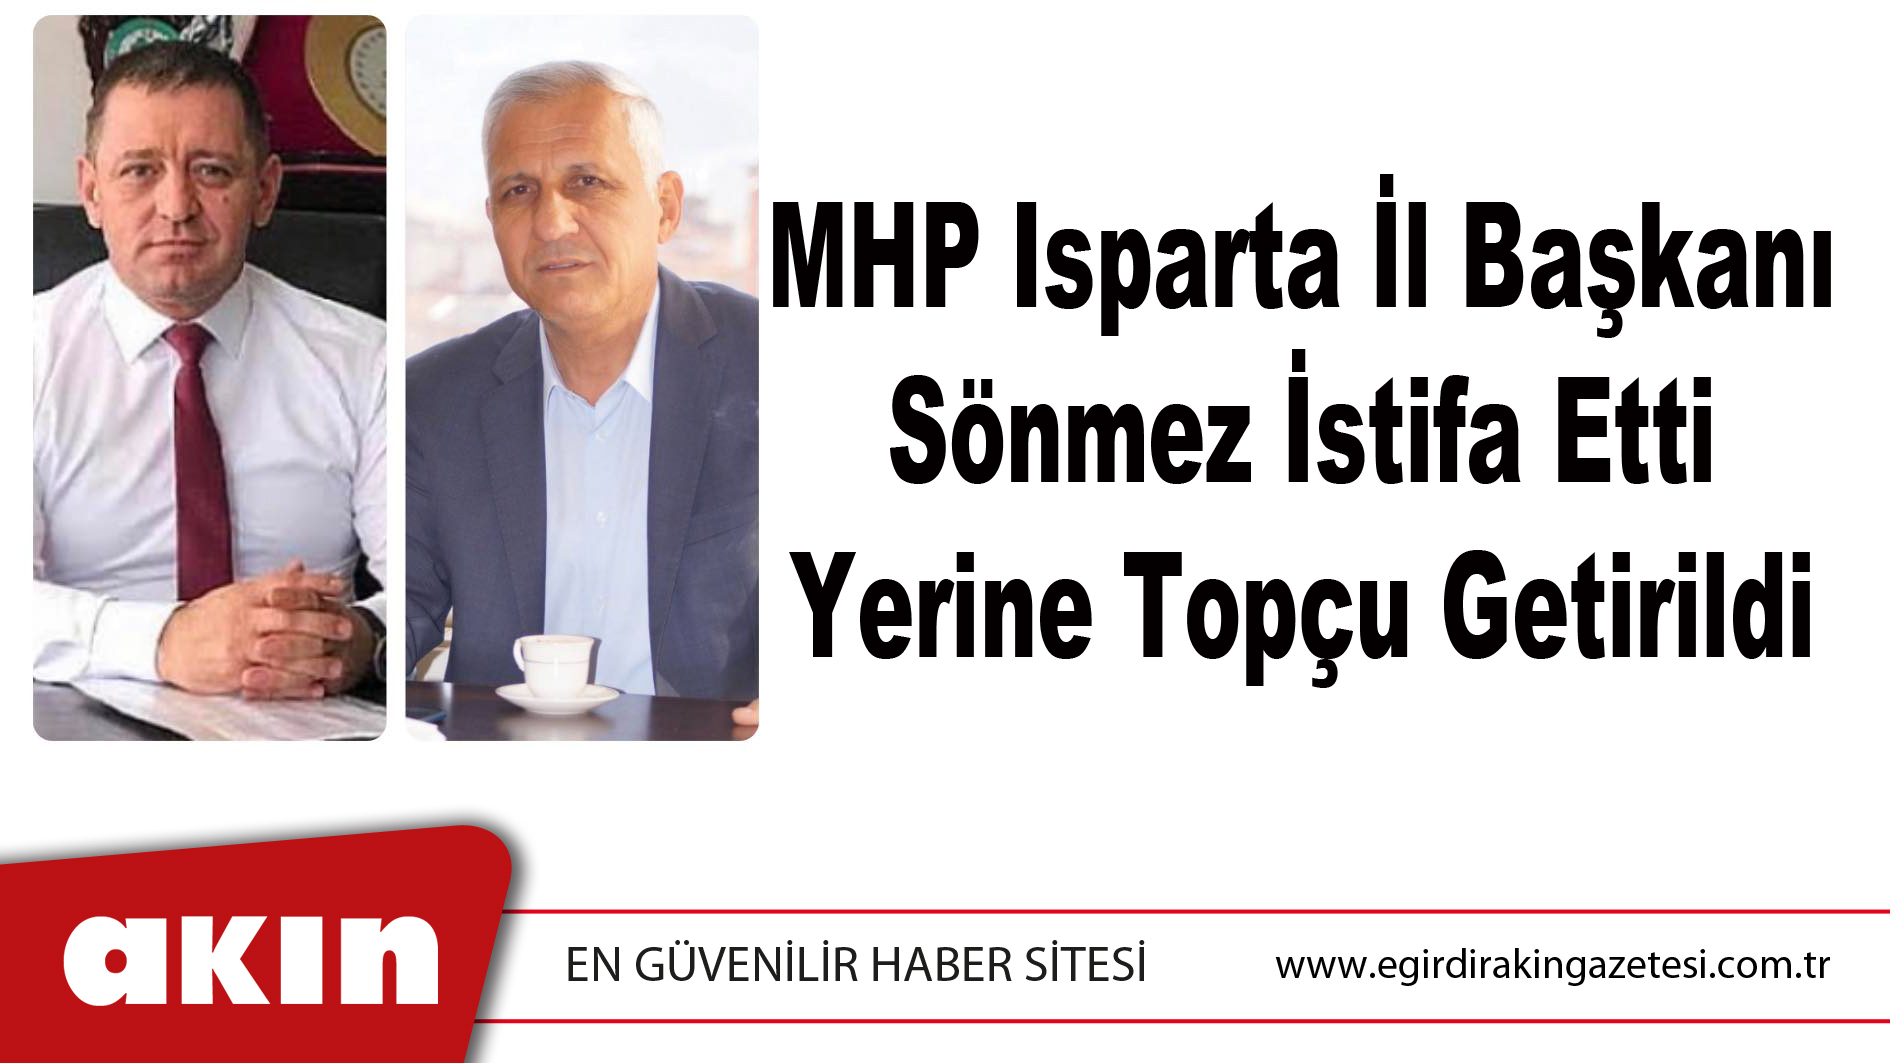 eğirdir haber,akın gazetesi,egirdir haberler,son dakika,MHP Isparta İl Başkanı Sönmez İstifa Etti Yerine Topçu Getirildi